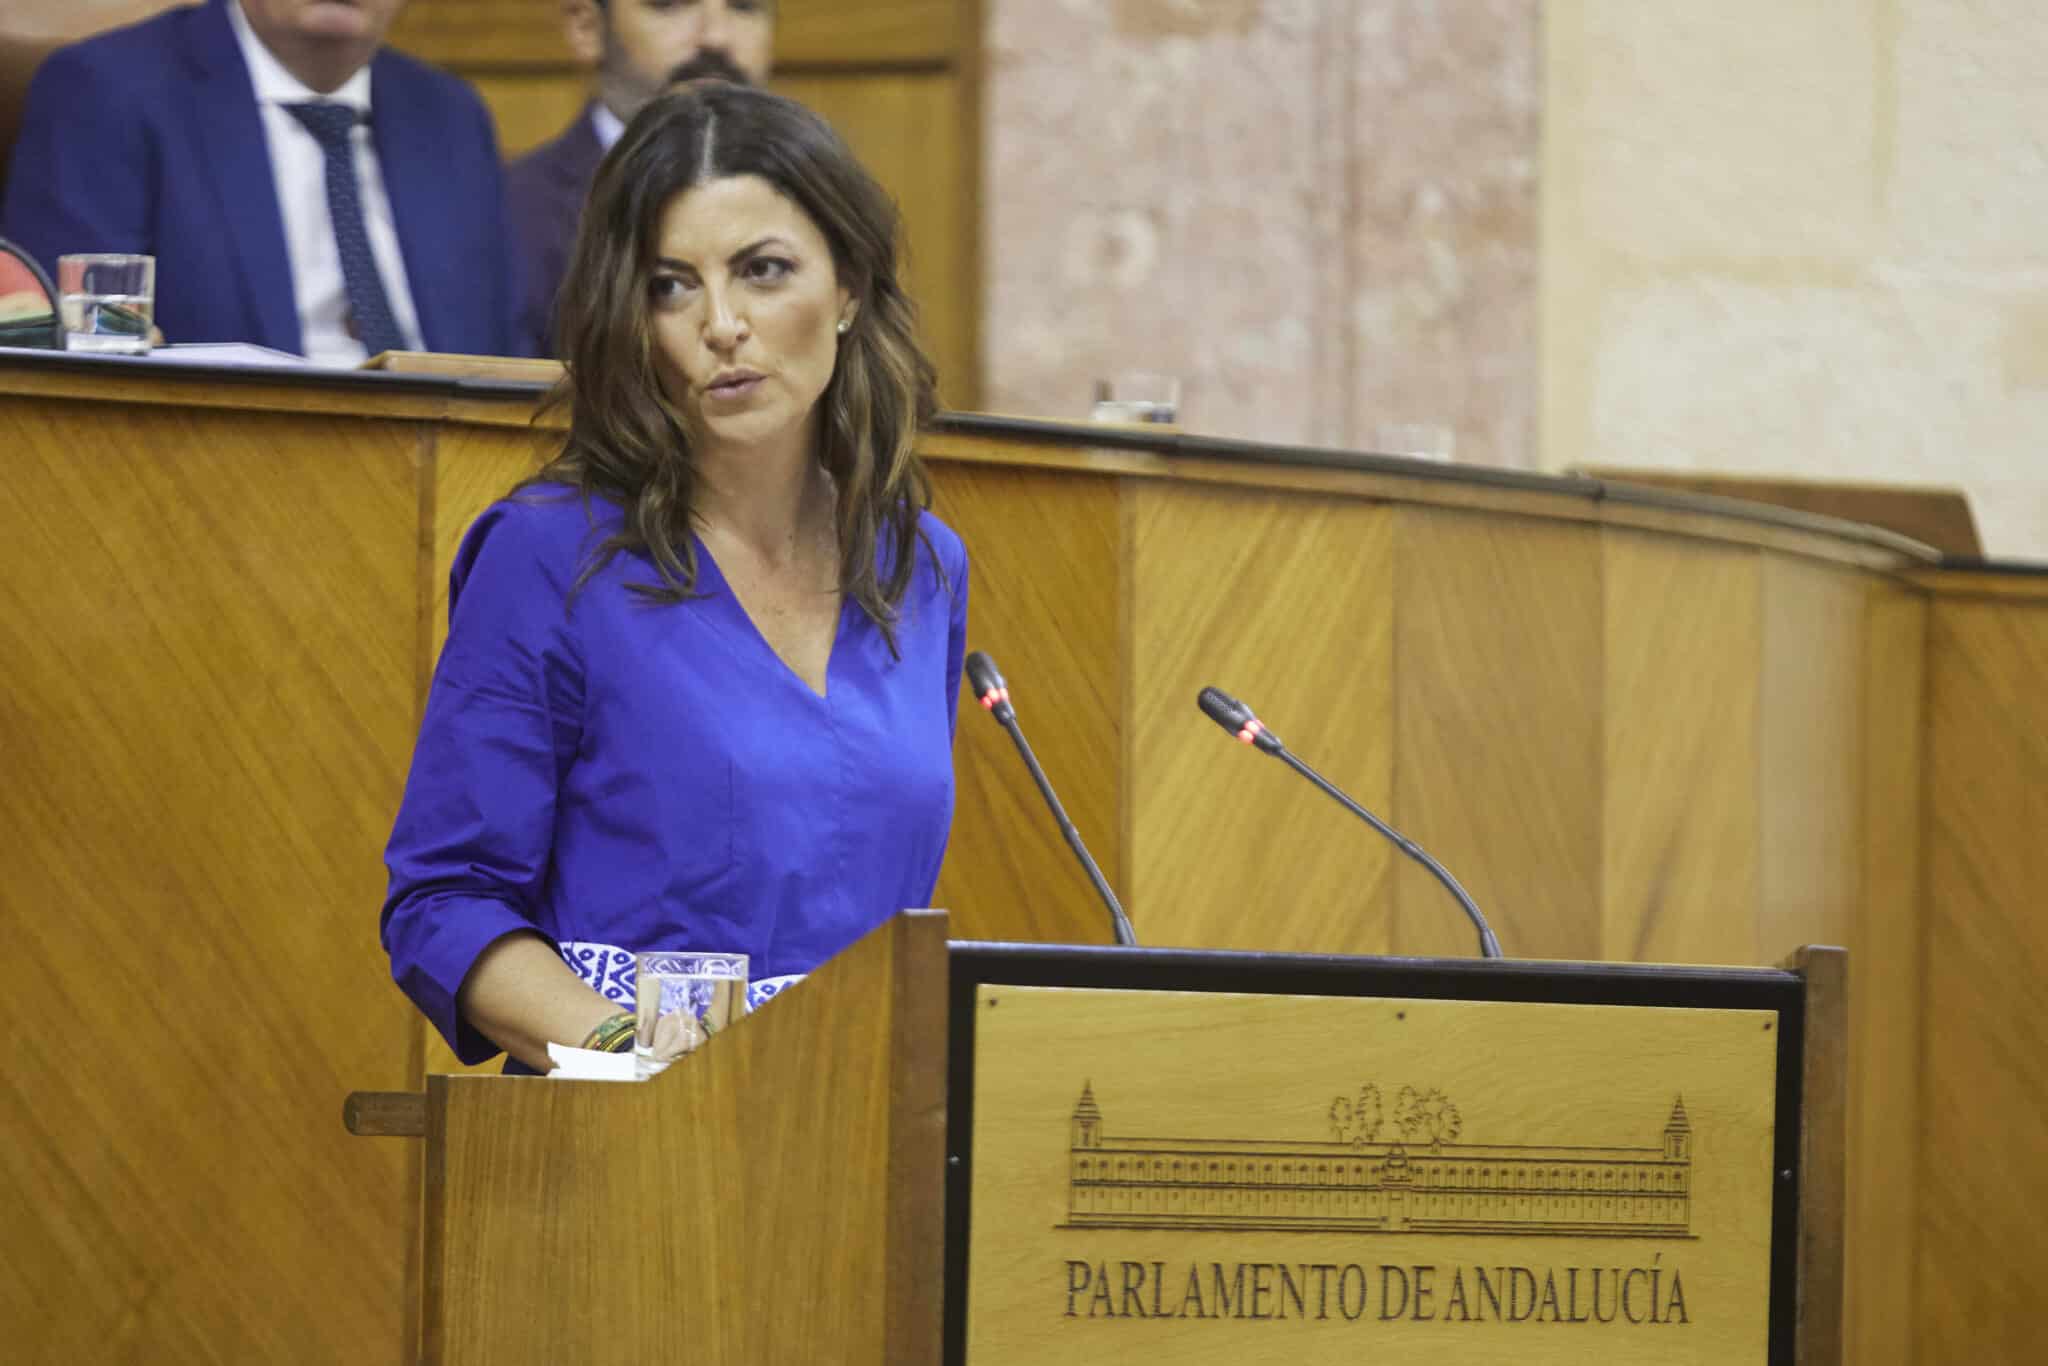 La portavoz del grupo parlamentario VOX, Macarena Olona, durante la segunda jornada del debate de investidura del presidente de la Junta de Andalucía de la XII legislatura en el Parlamento de Andalucía